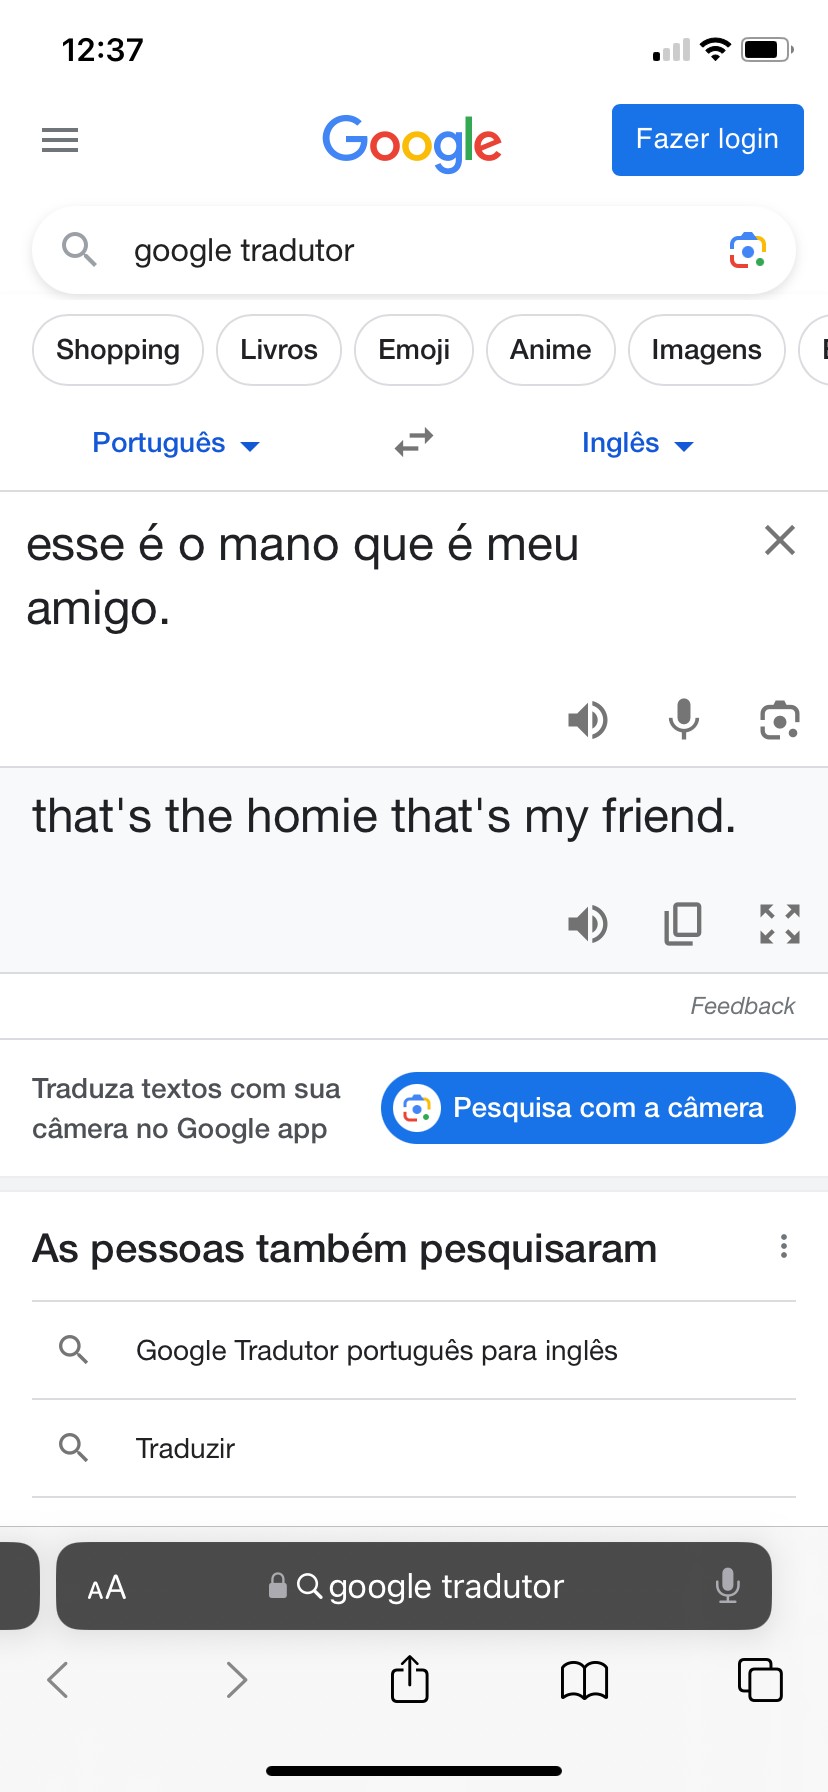 Google Tradutor Portugués ¥ PORTUGUÊS cura da depressão Câmera Manuscrito  [o NIE 4) INGLES minecraft - . - iFunny Brazil